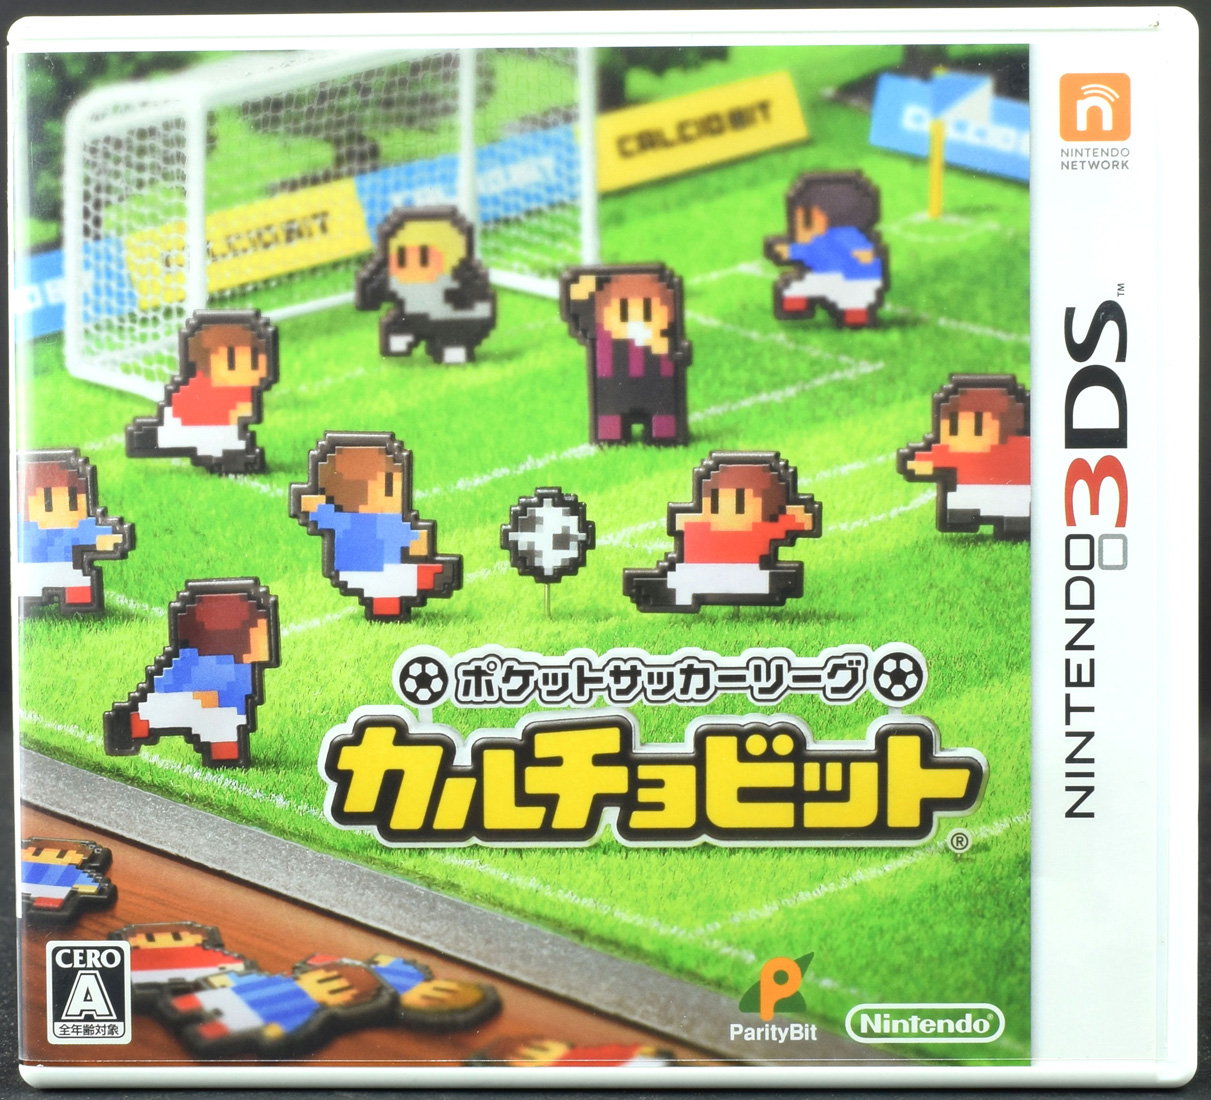 3ds ポケットサッカーリーグ Nintendo3ds カルチョビット ケース ソフト お得な特別割引価格 カルチョビット